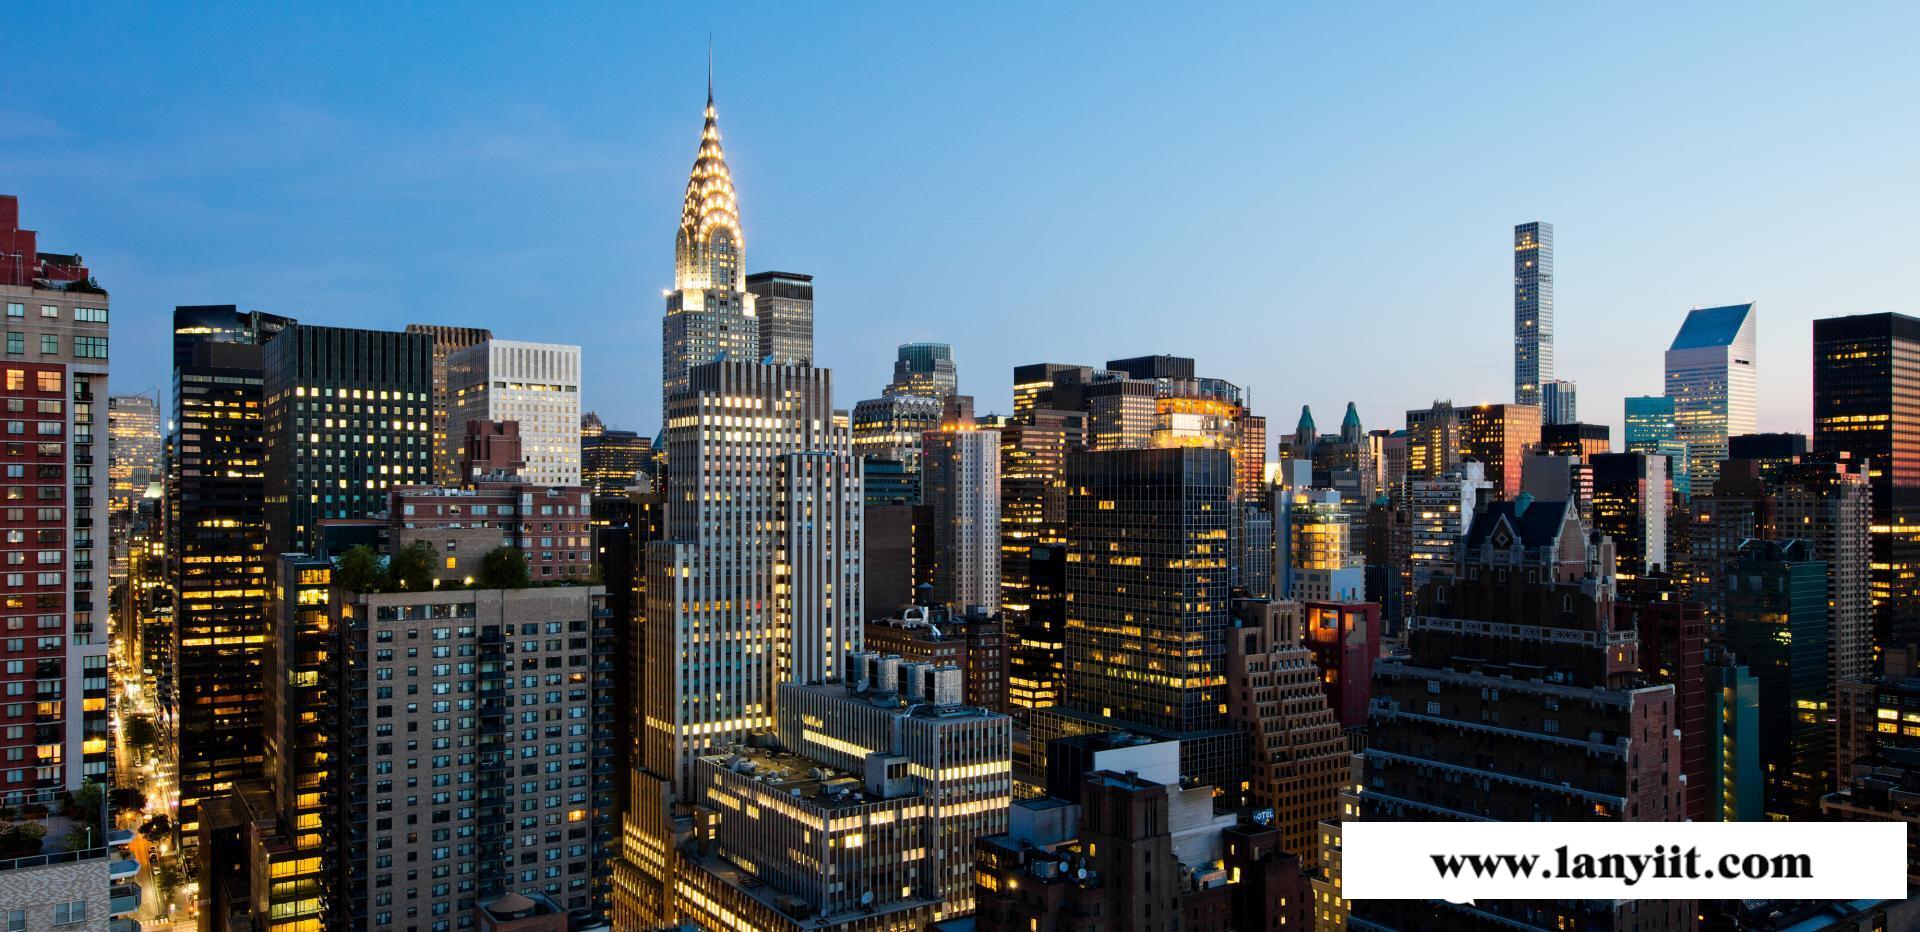 曼哈顿东高端楼盘推荐:联合国一号 全玻璃幕墙 坐享无敌河景和曼哈顿城市全景景观(图28)